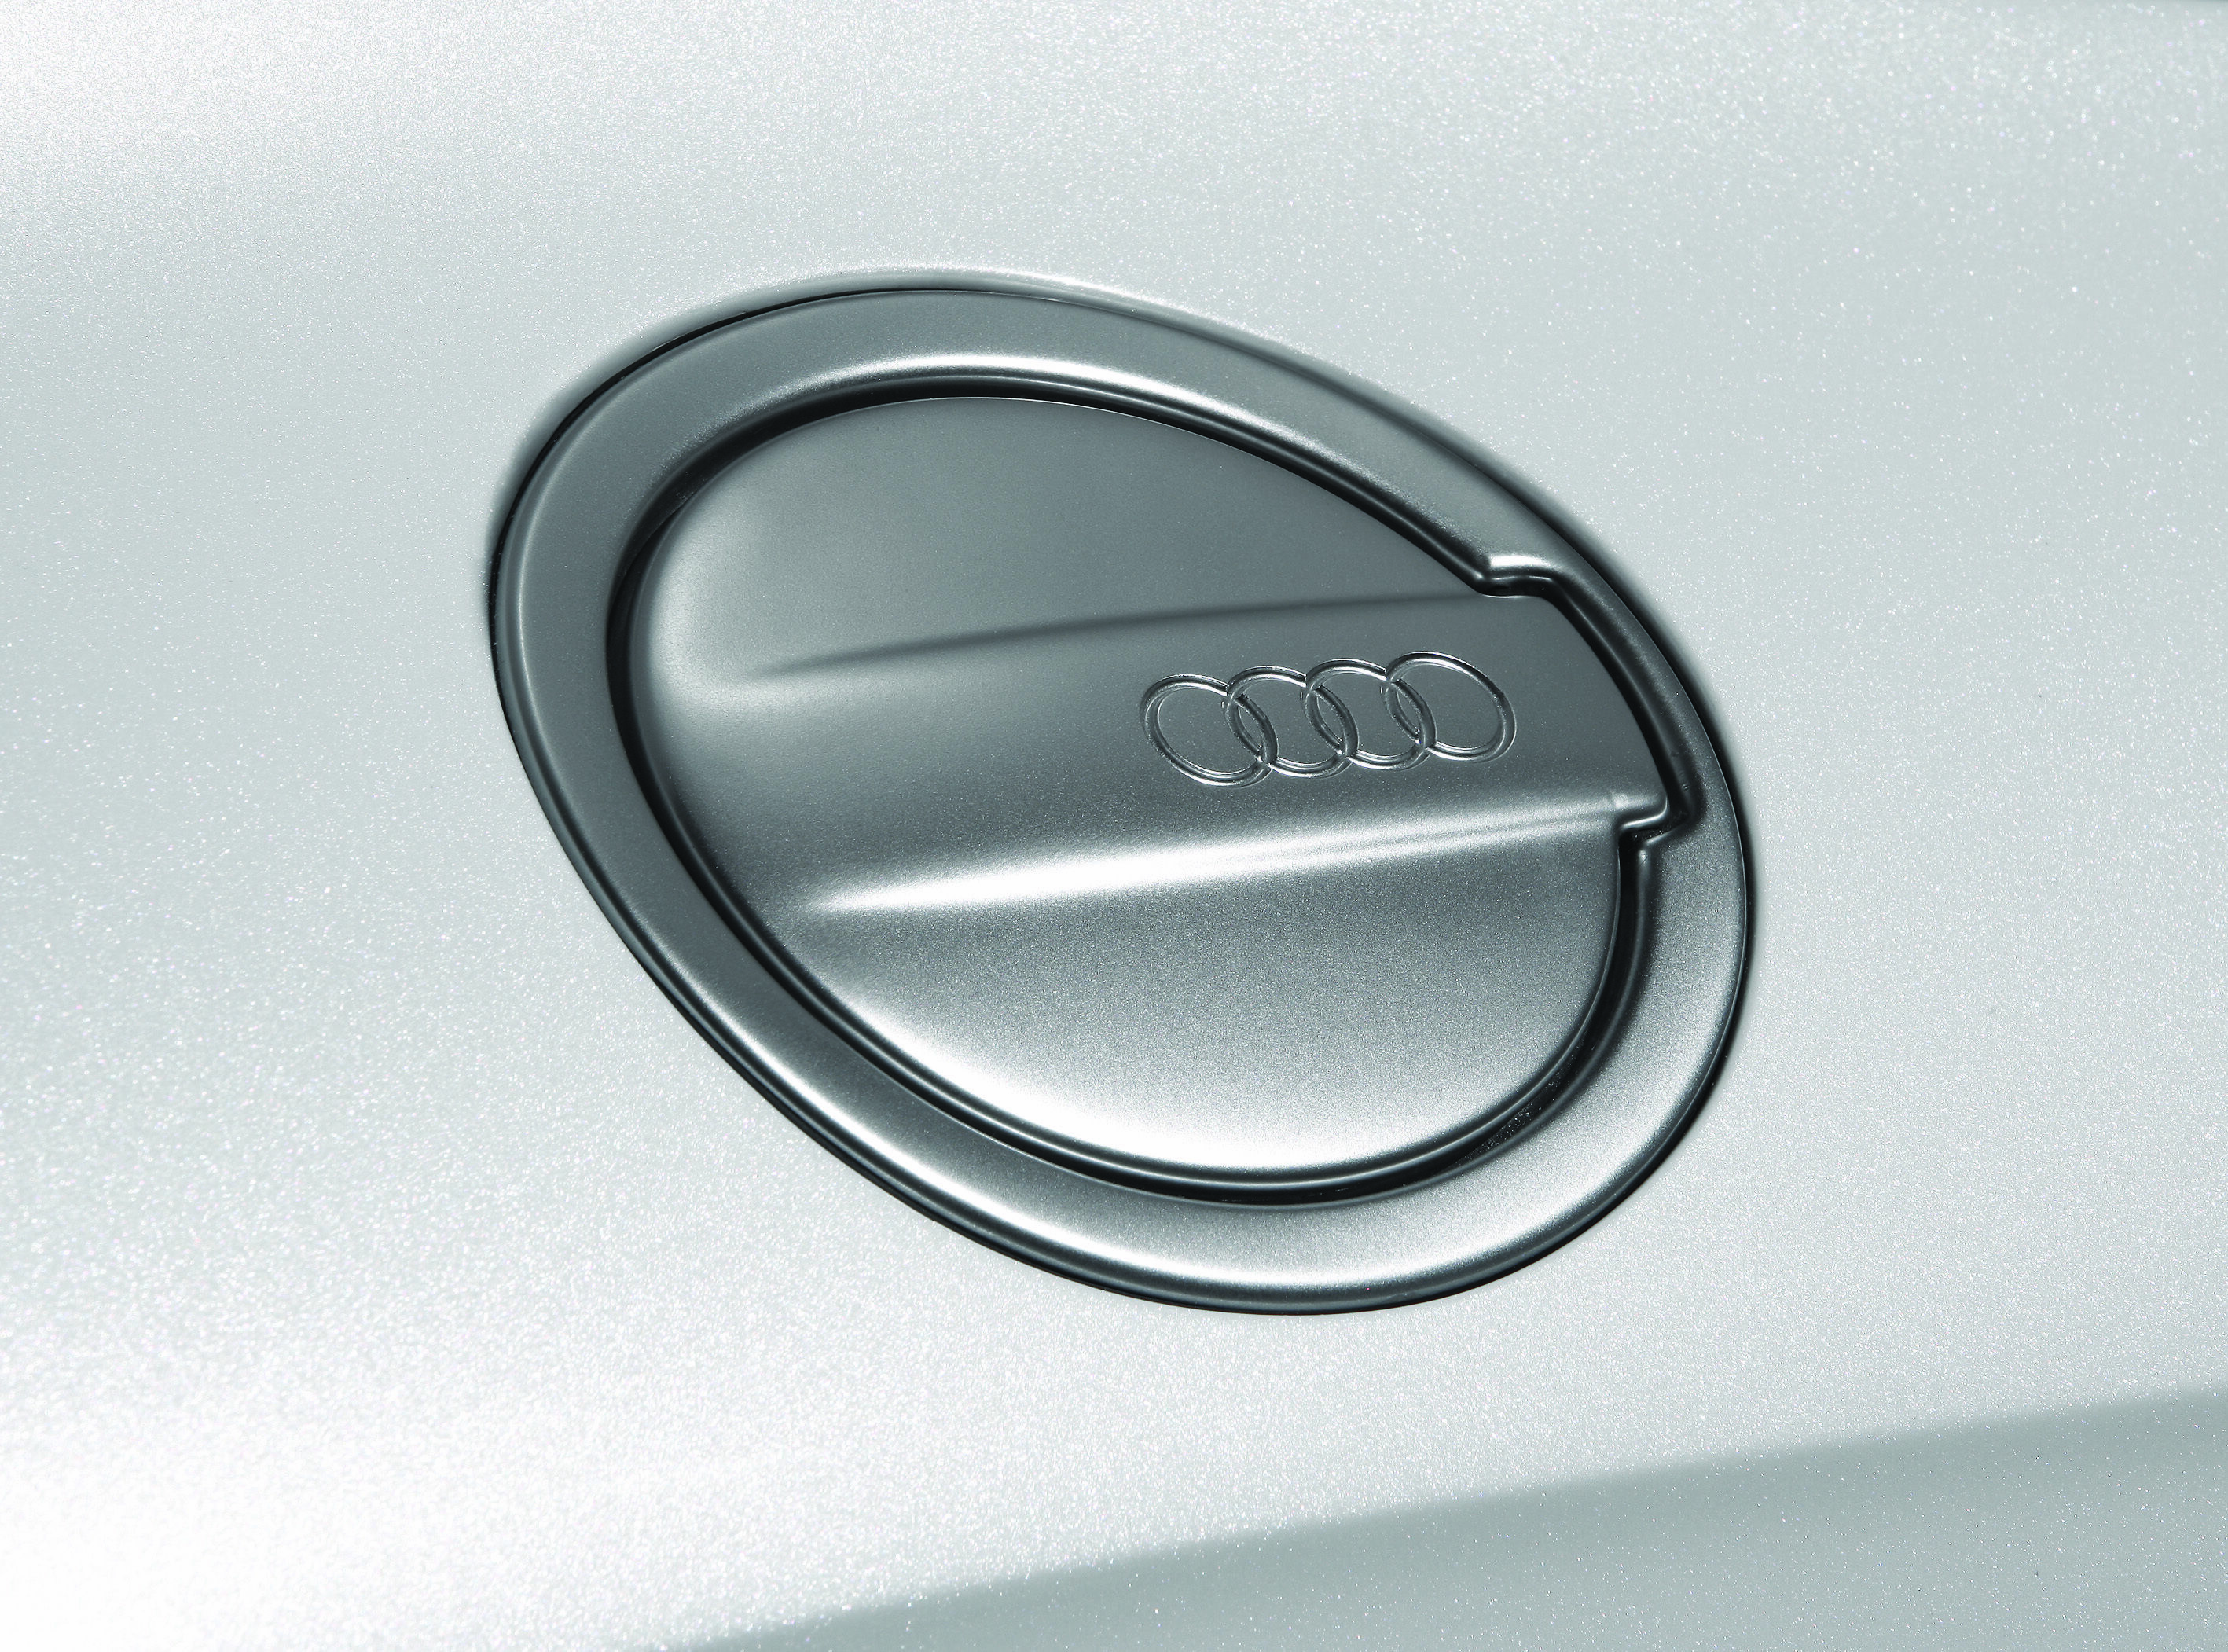 Audi Shooting Brake Concept - Detail